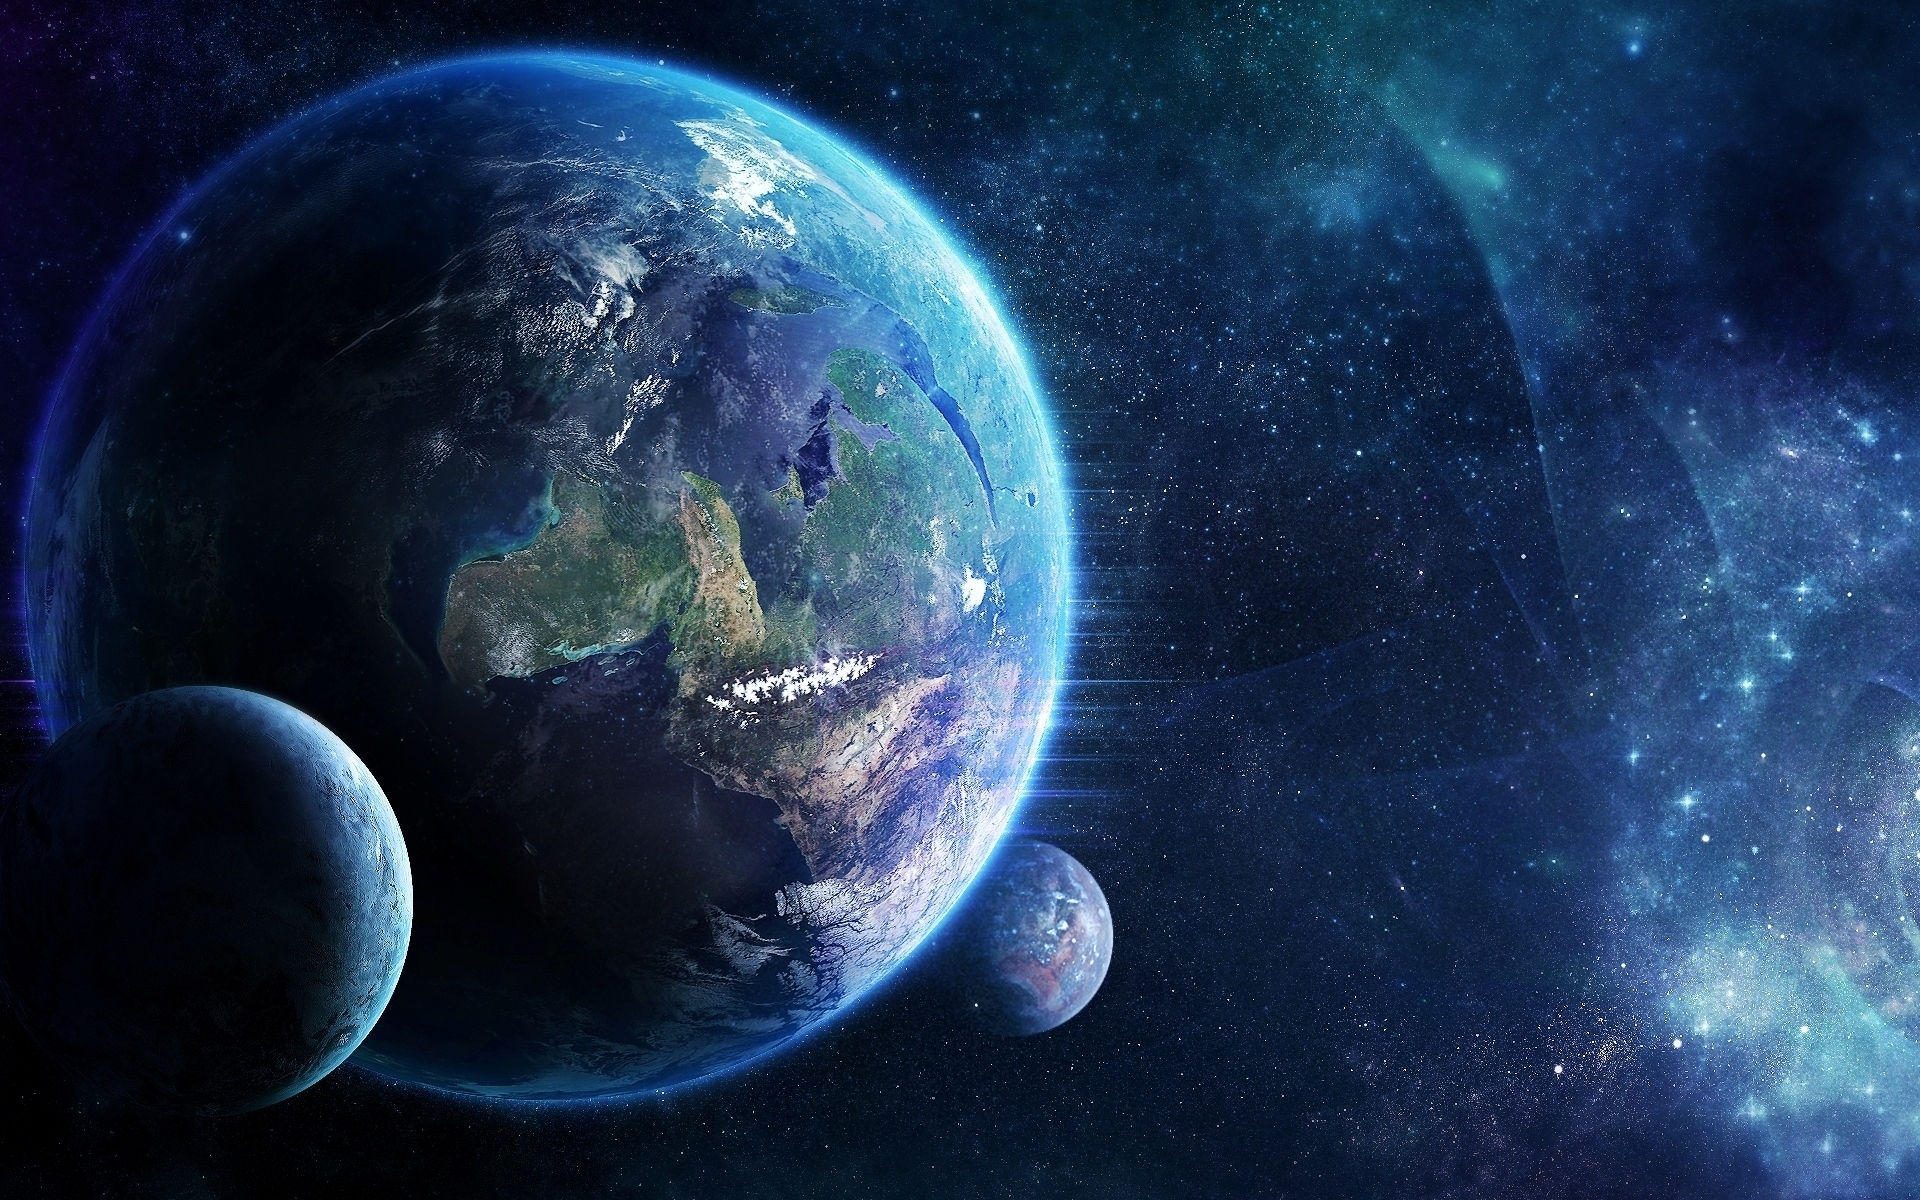 Обои планета спутник картинки на рабочий стол на тему Космос - скачать бесплатно